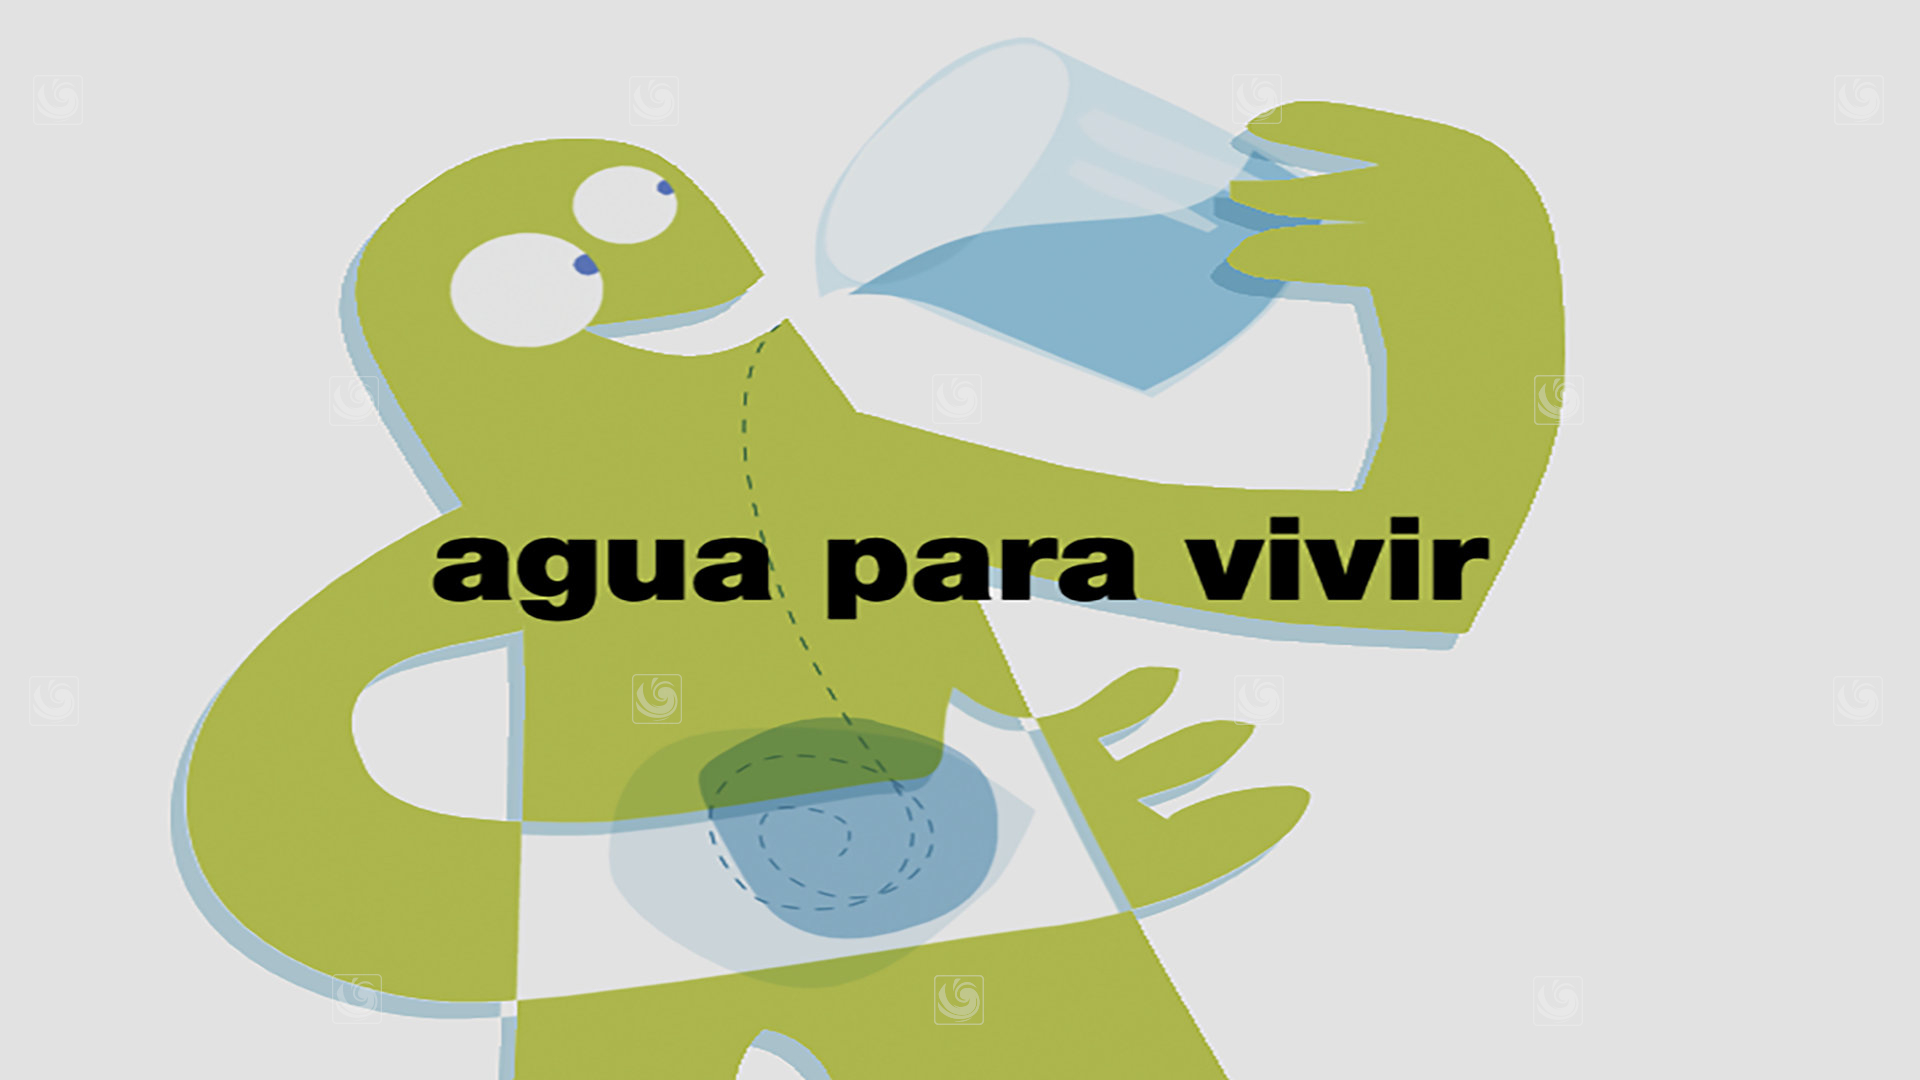 Fotograma de animación 2D para un proyecto de concienciación de la necesidad de ahorrar agua